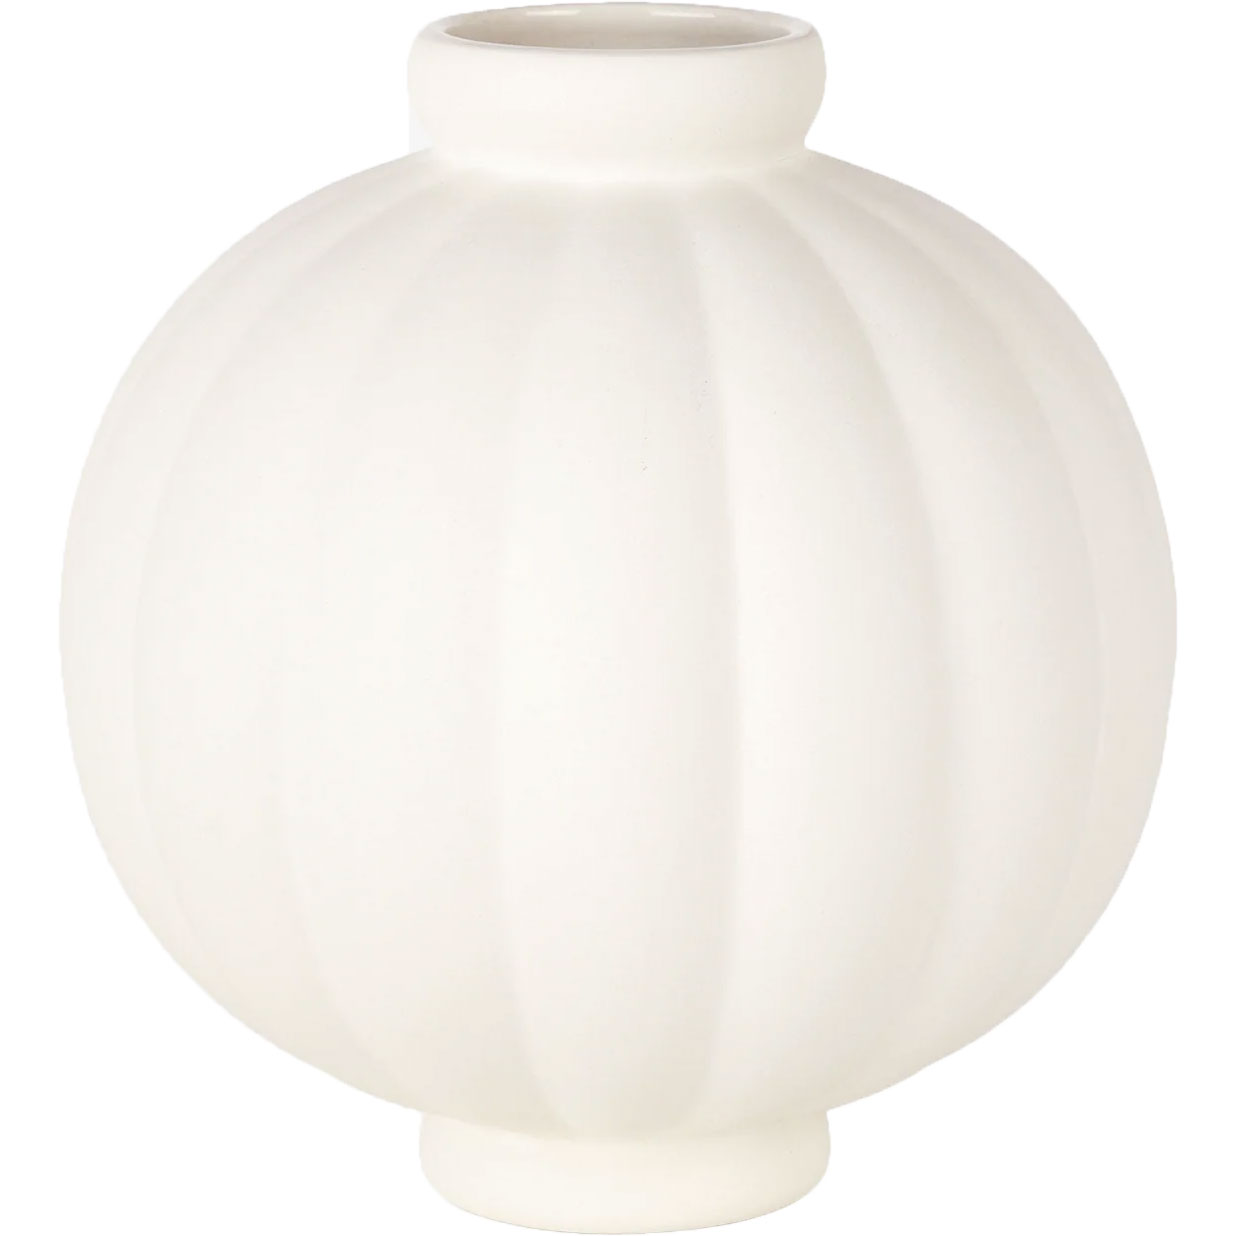 Balloon 01 Vase 25 cm, Raw White